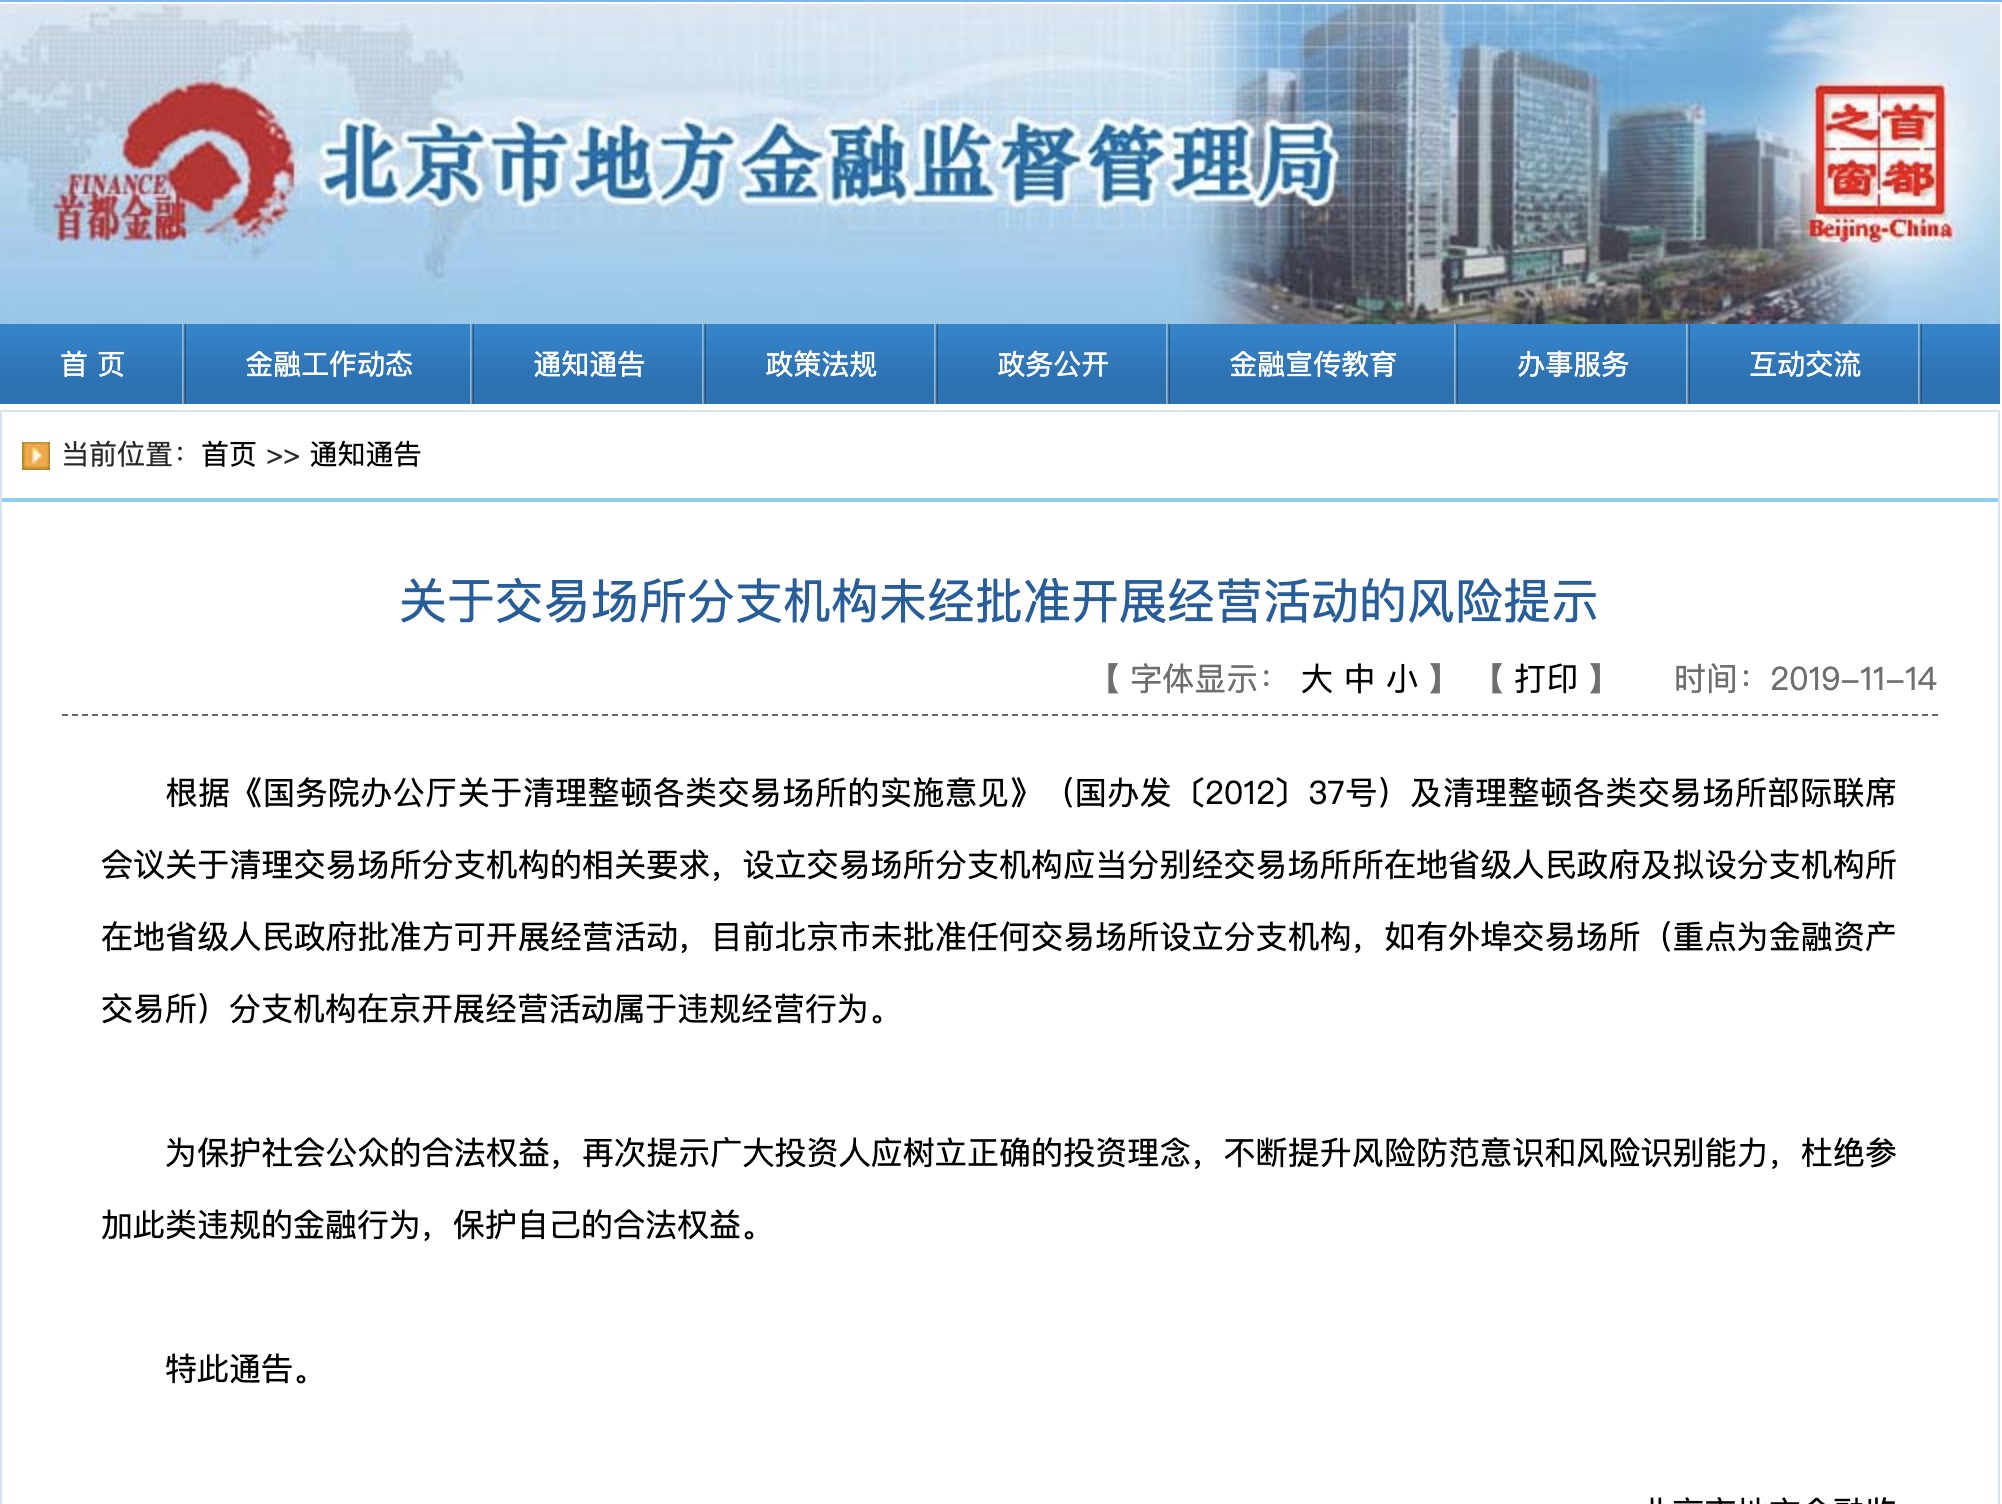 北京市金融监管局：本市未批准任何交易场所设立分支机构